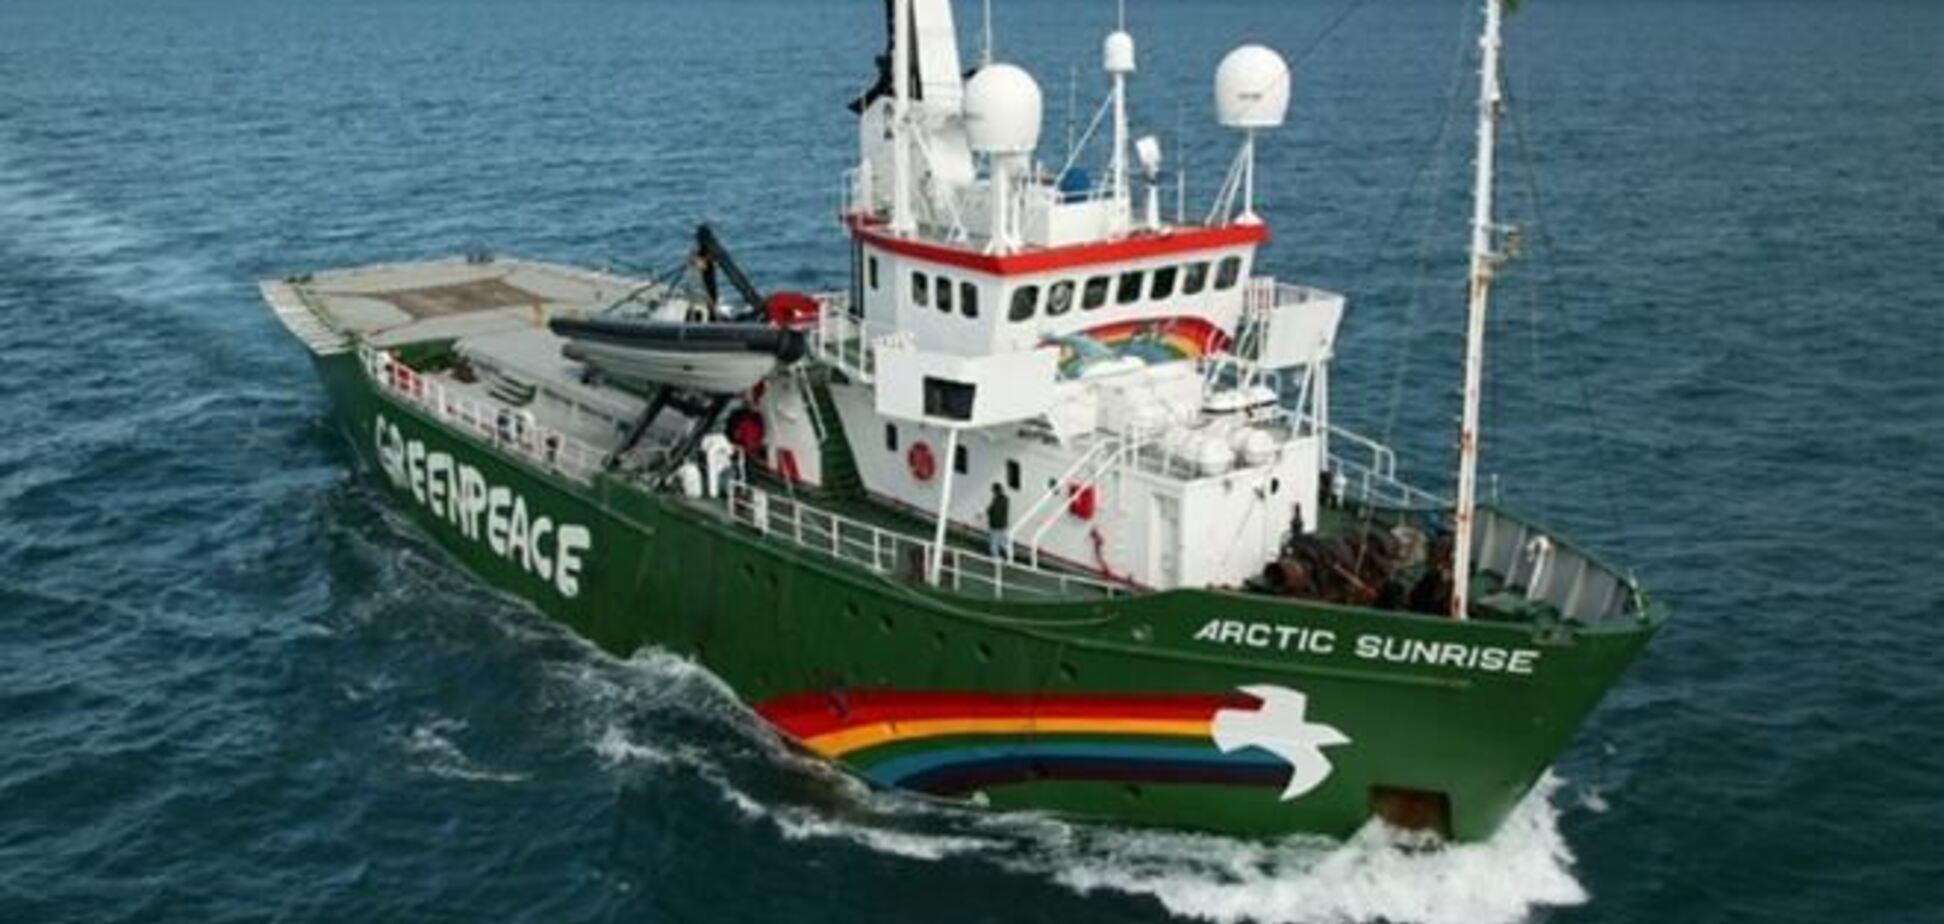 Рада Росії з прав людини просить випустити екіпаж Arctic Sunrise